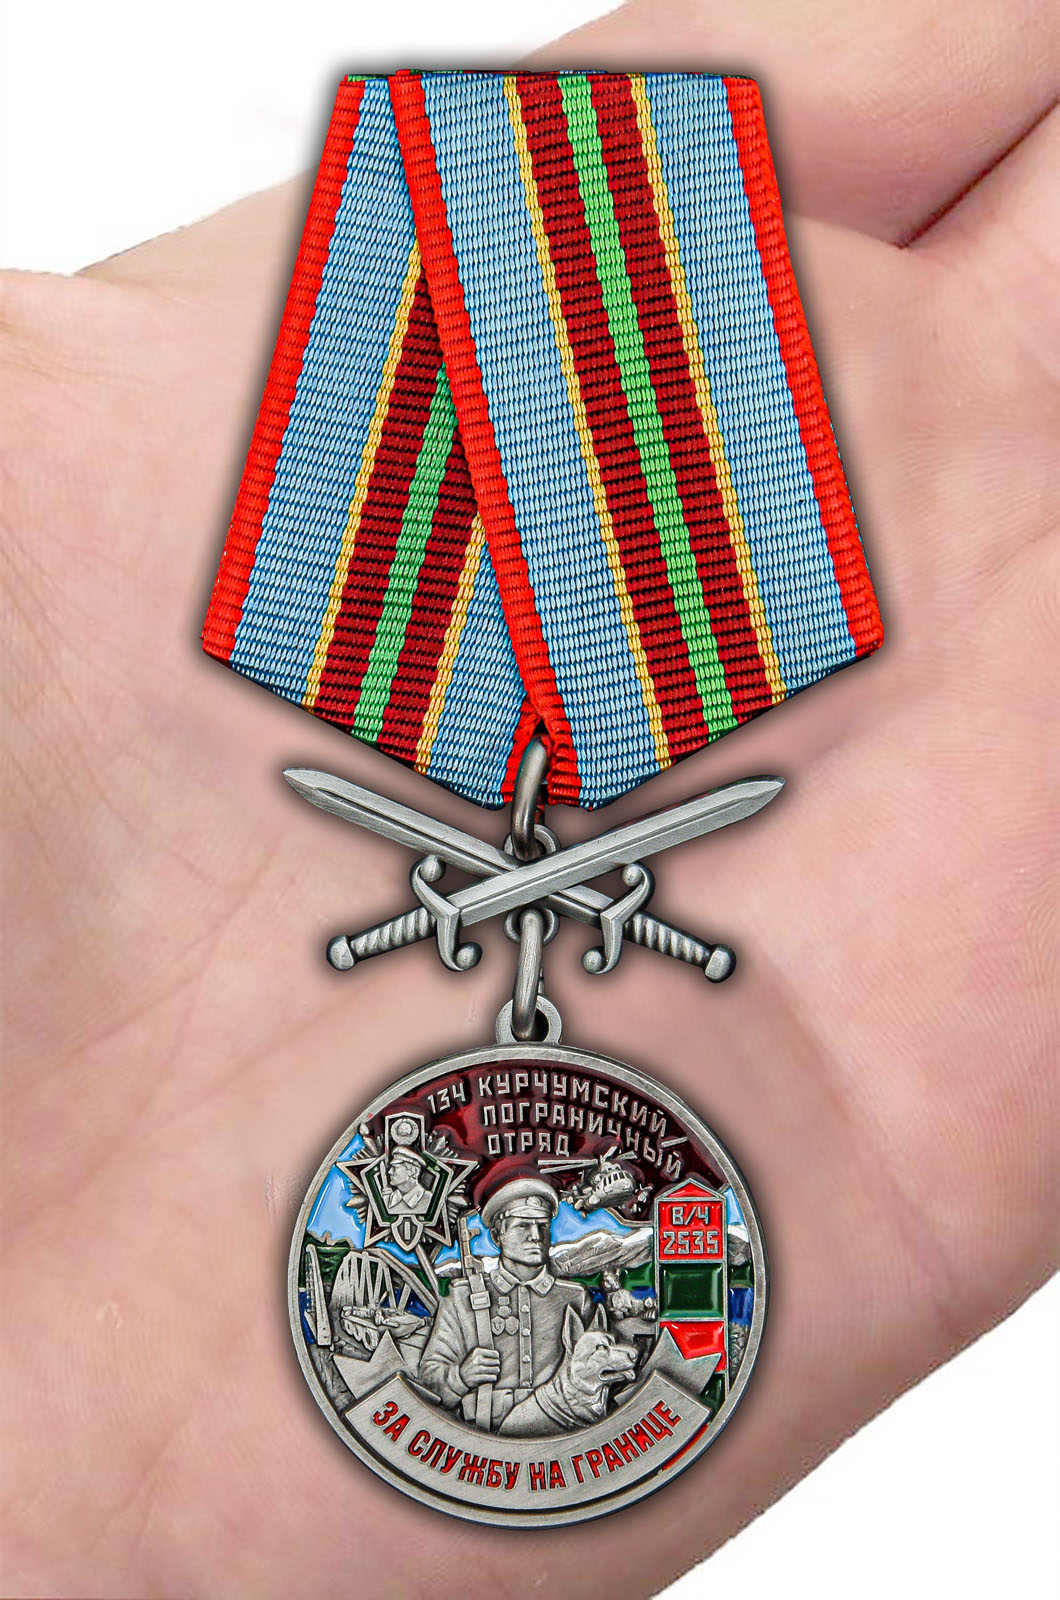 Заказать медаль "За службу в Курчумском пограничном отряде"